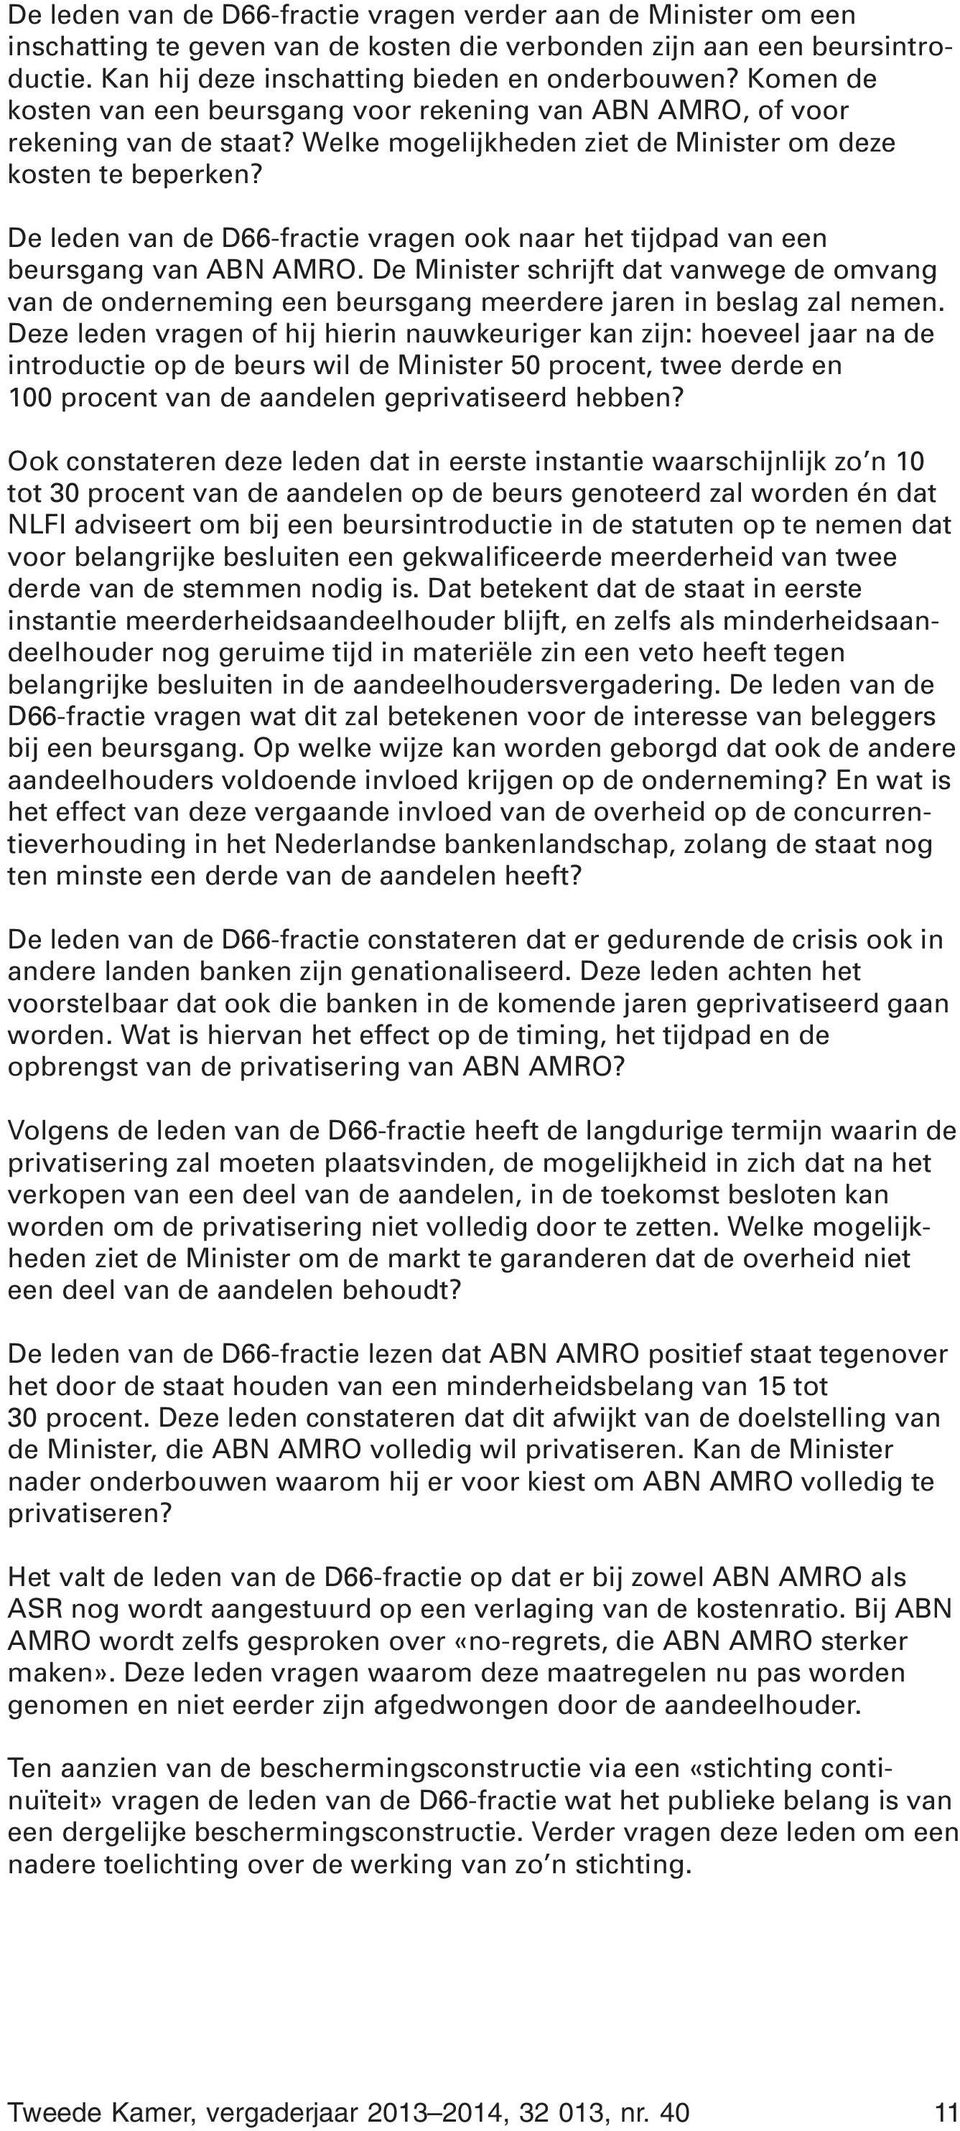 De leden van de D66-fractie vragen ook naar het tijdpad van een beursgang van ABN AMRO. De Minister schrijft dat vanwege de omvang van de onderneming een beursgang meerdere jaren in beslag zal nemen.